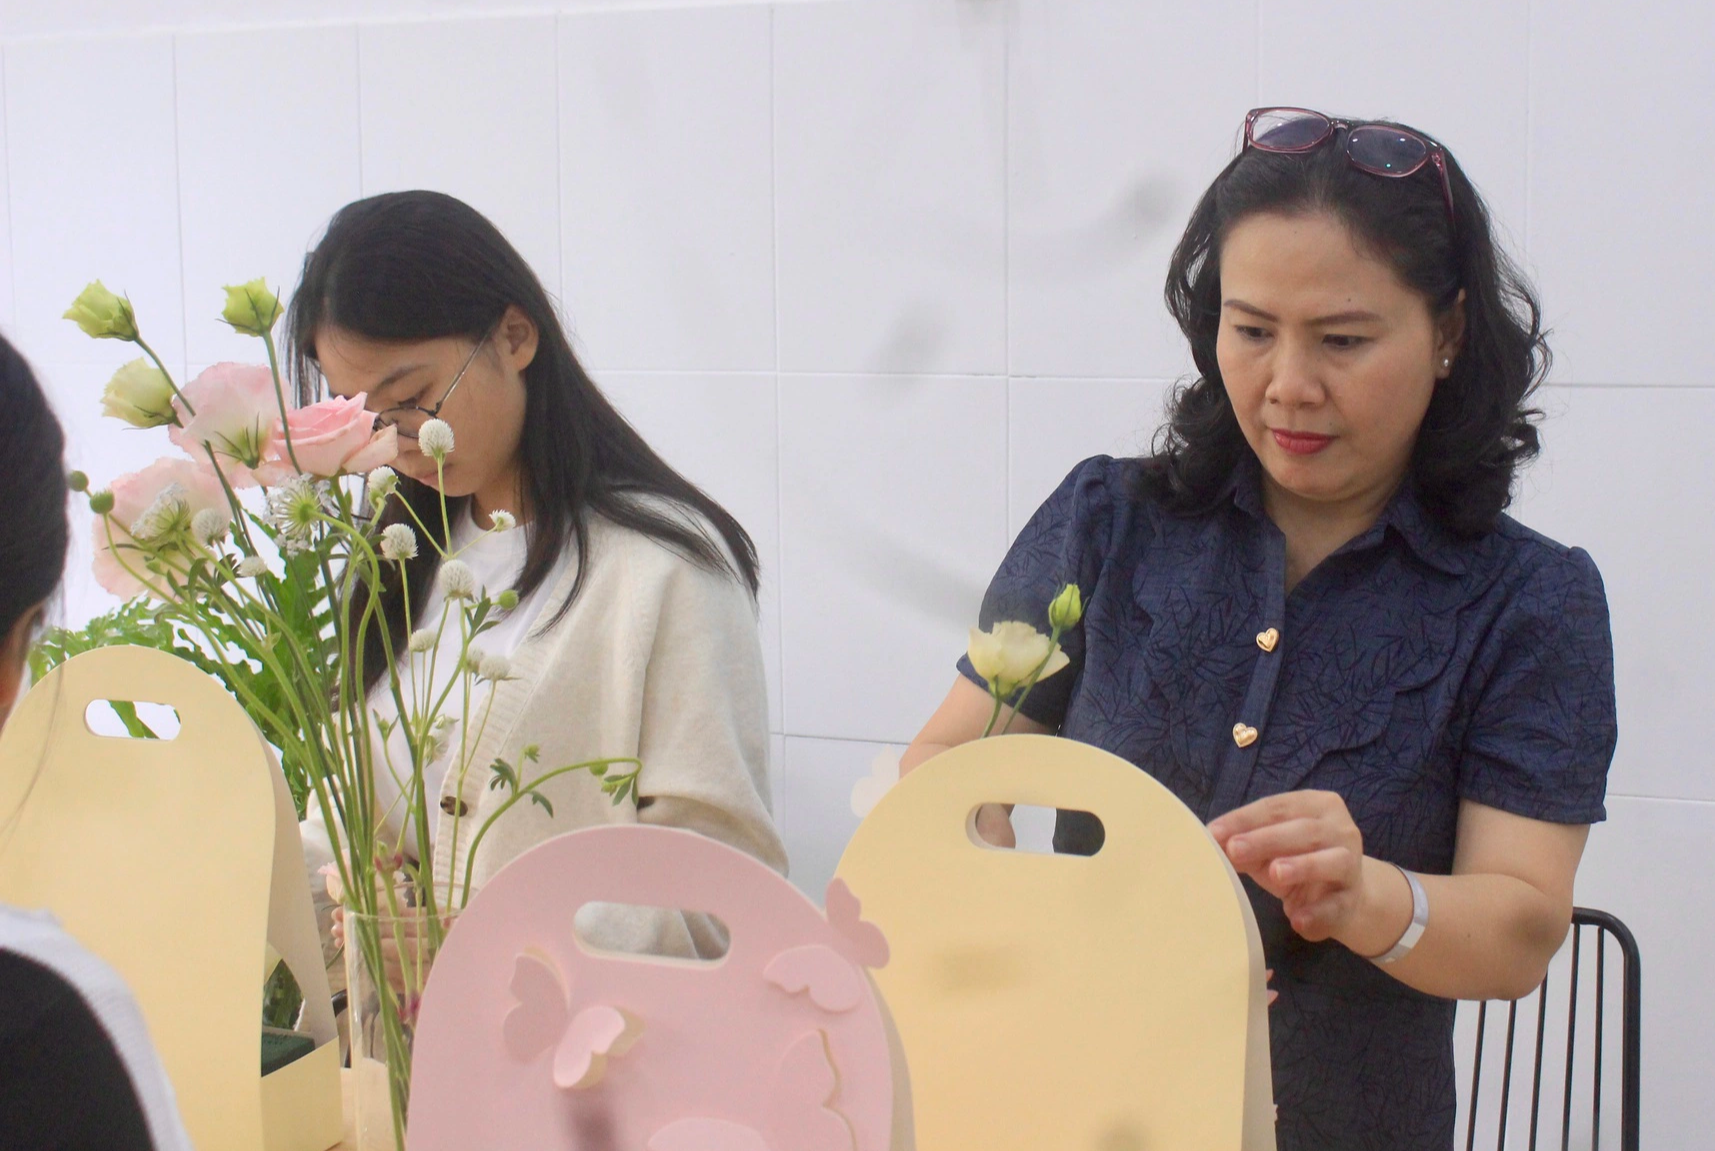 Workshop chữa lành không người dạy, không ồn ào, chỉ có mình với hoa tại Sài Gòn - Ảnh 7.